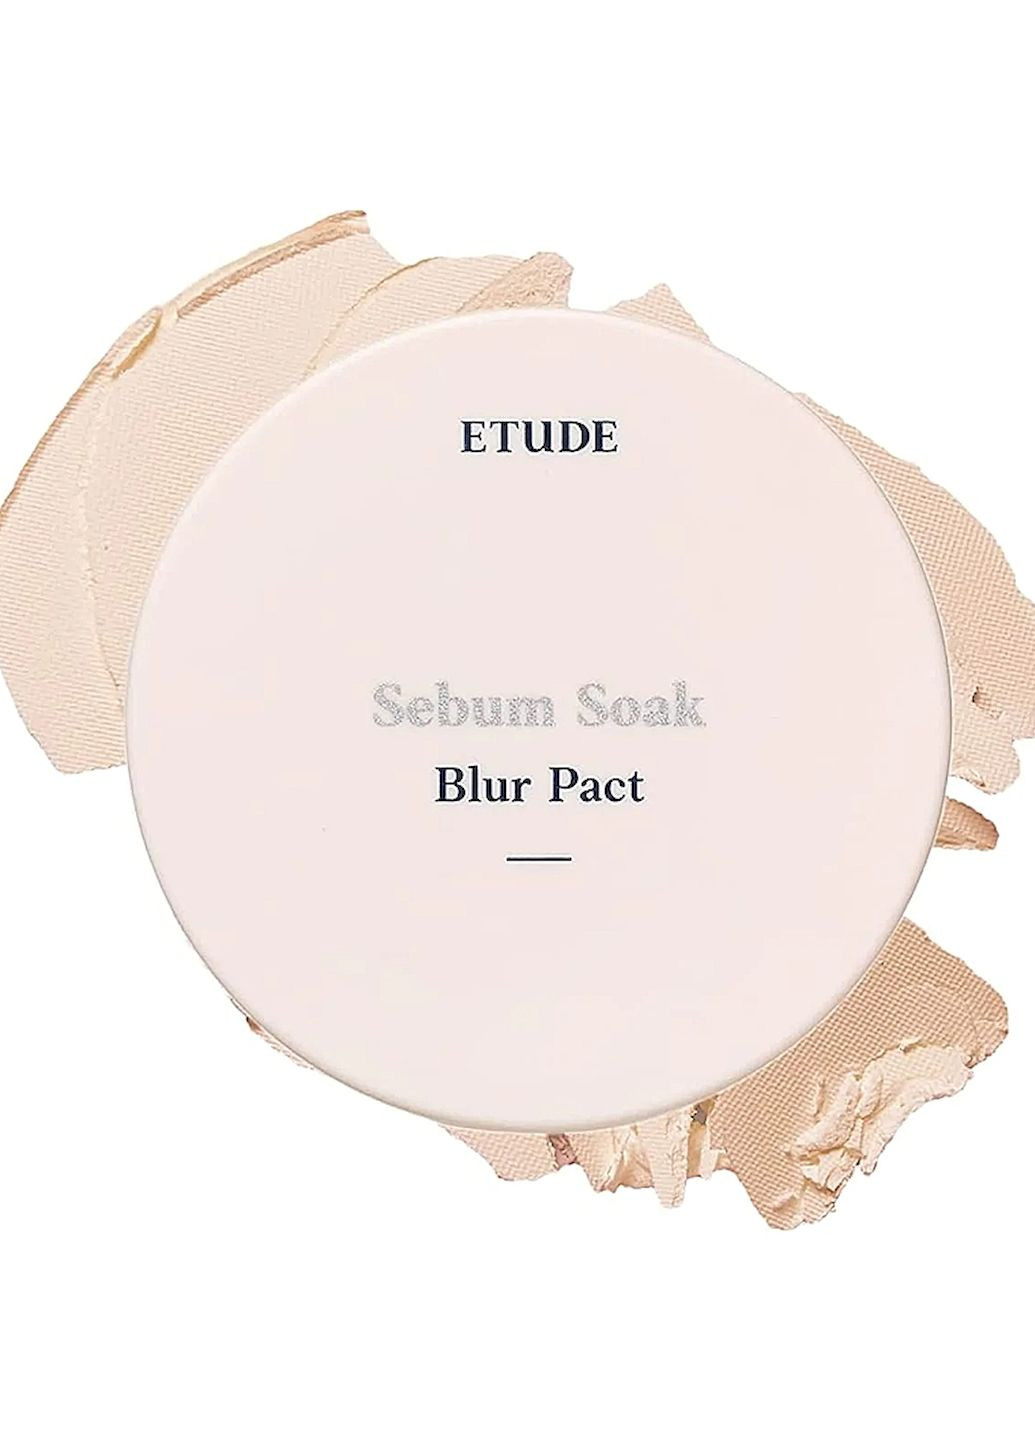 Пудра SEBUM SOAK BLUR PACT компактна матуюча з ефектом фотошопу, 9г Etude House (257472087)